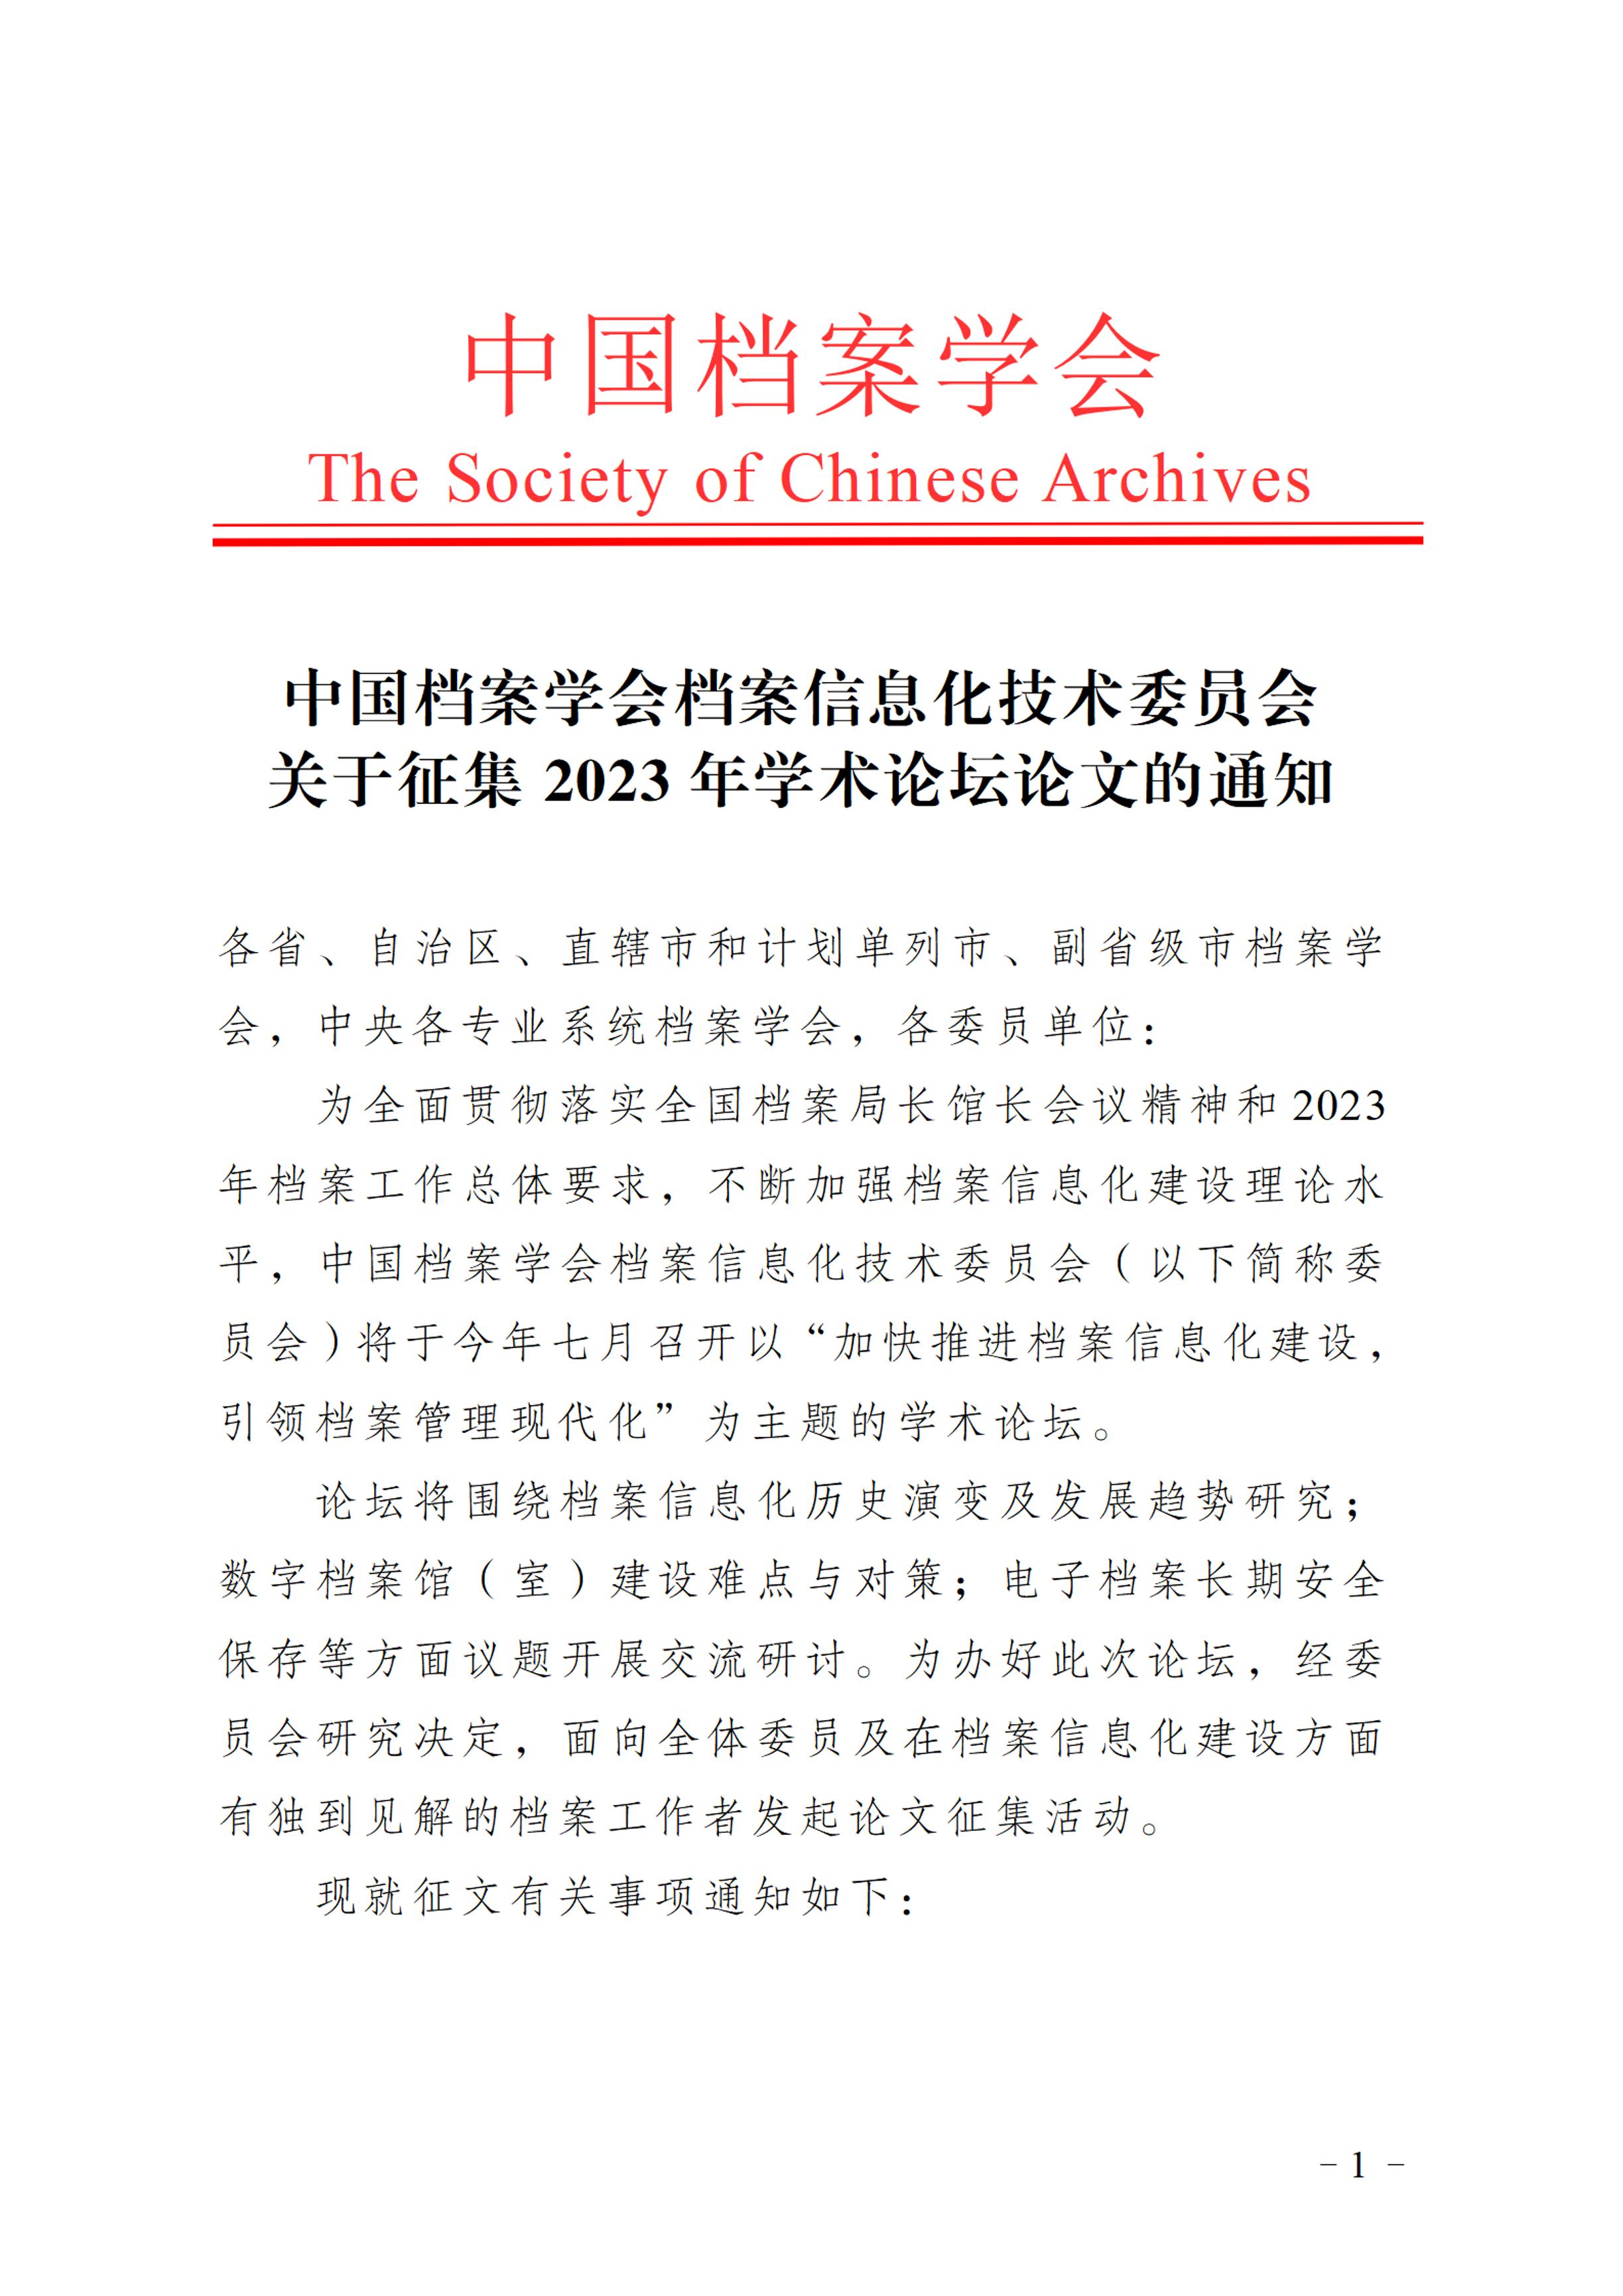 中国档案学会档案信息化技术委员会关于征集2023年学术论坛论文的通知-0